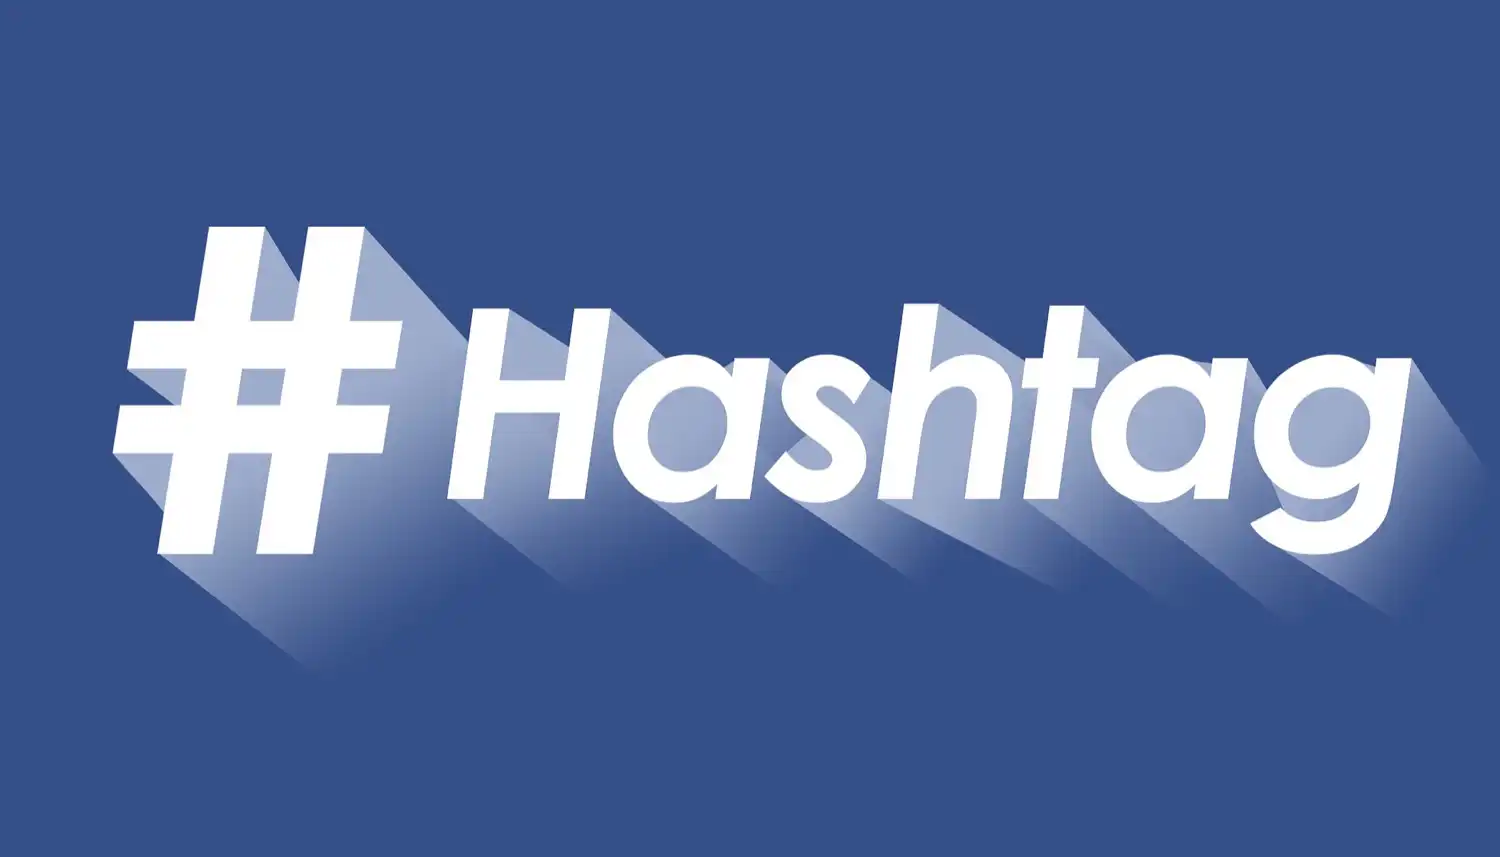 El uso de hashtag ayuda a visibilizar las marcas